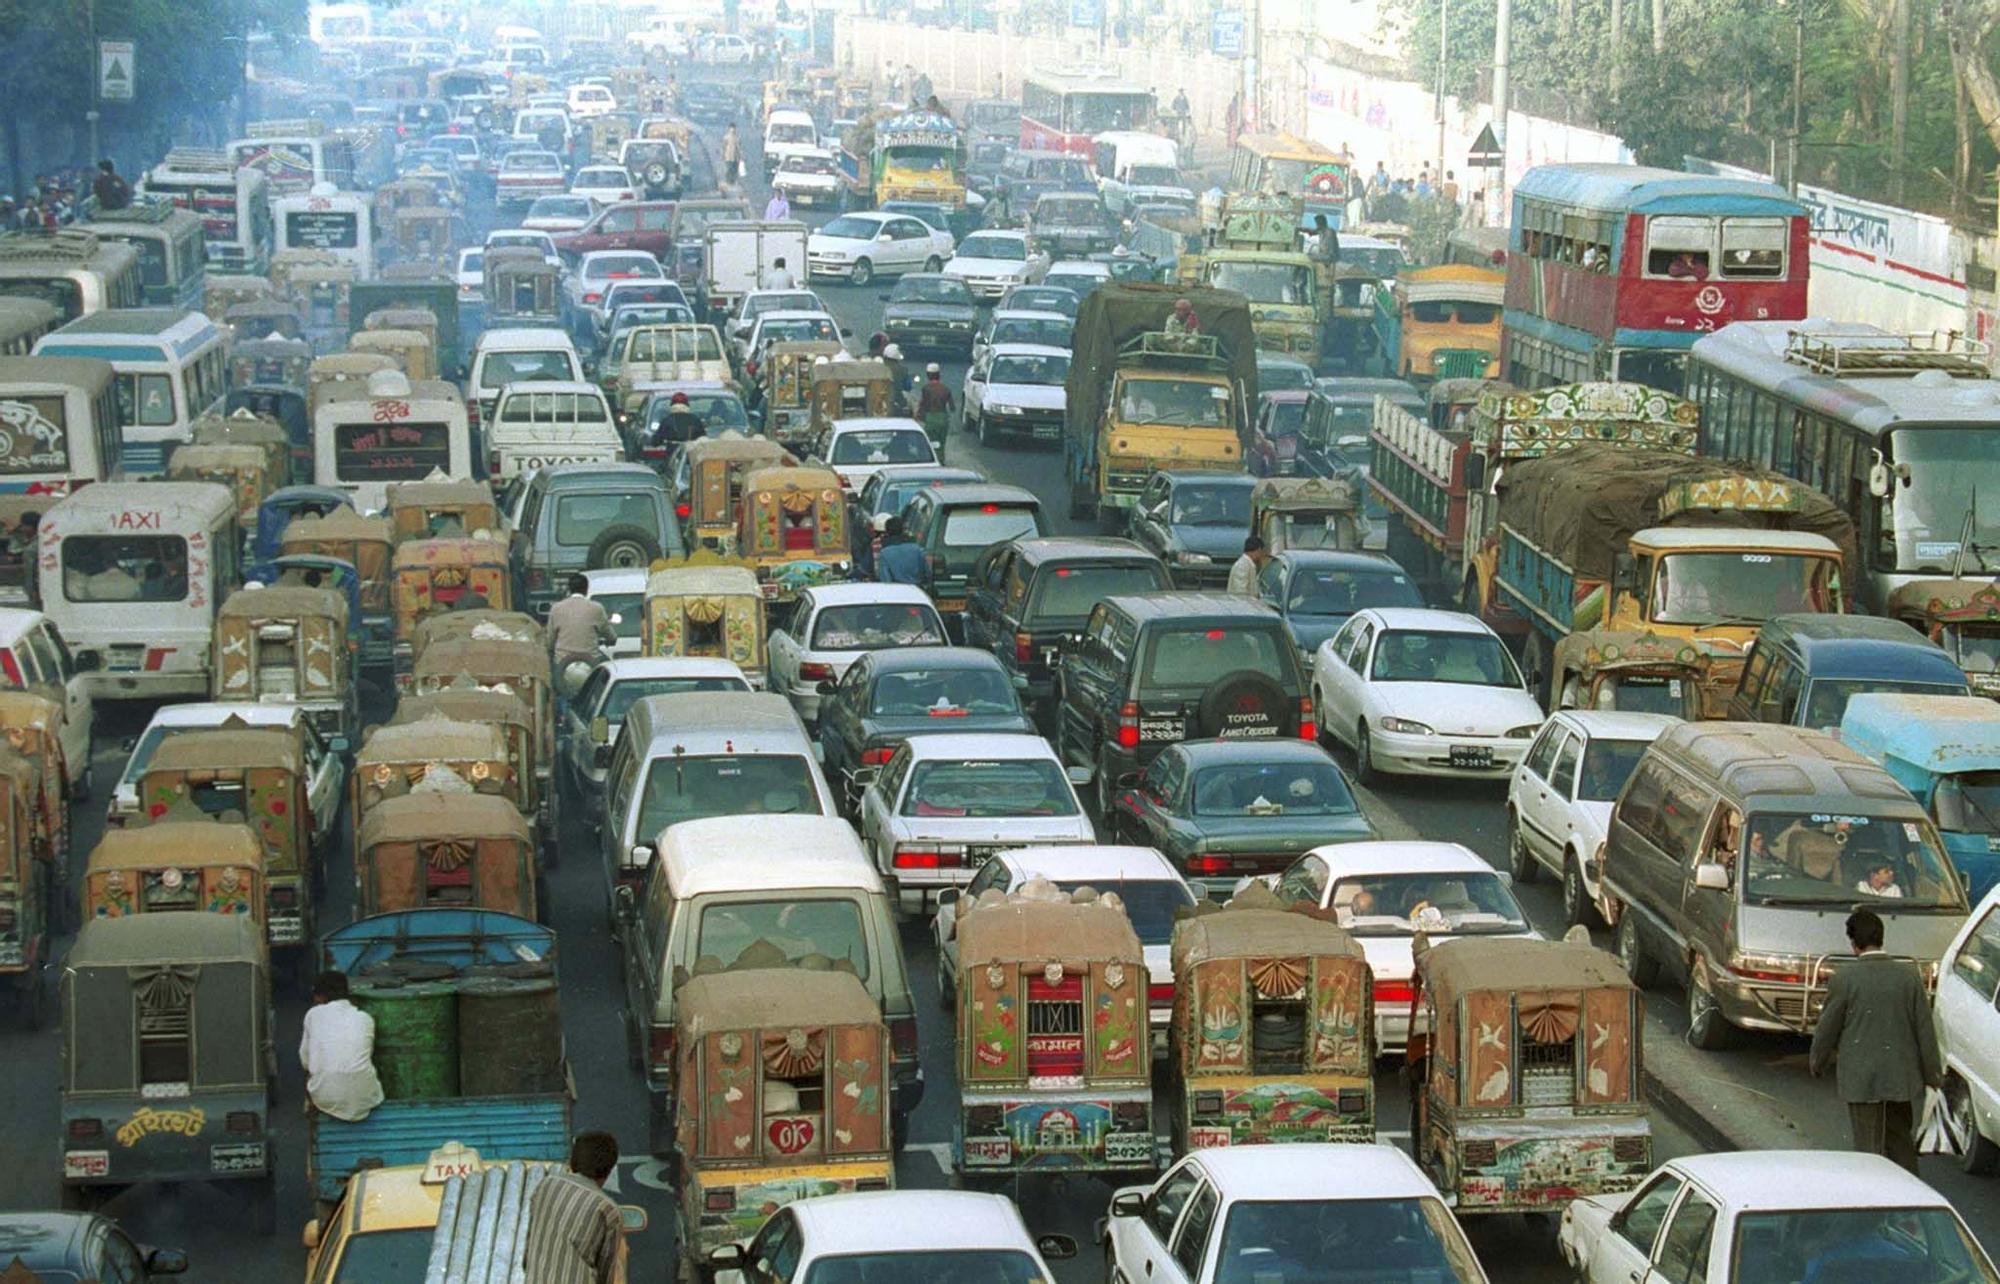 La ciudad de Dhaka, colapsada de tráfico